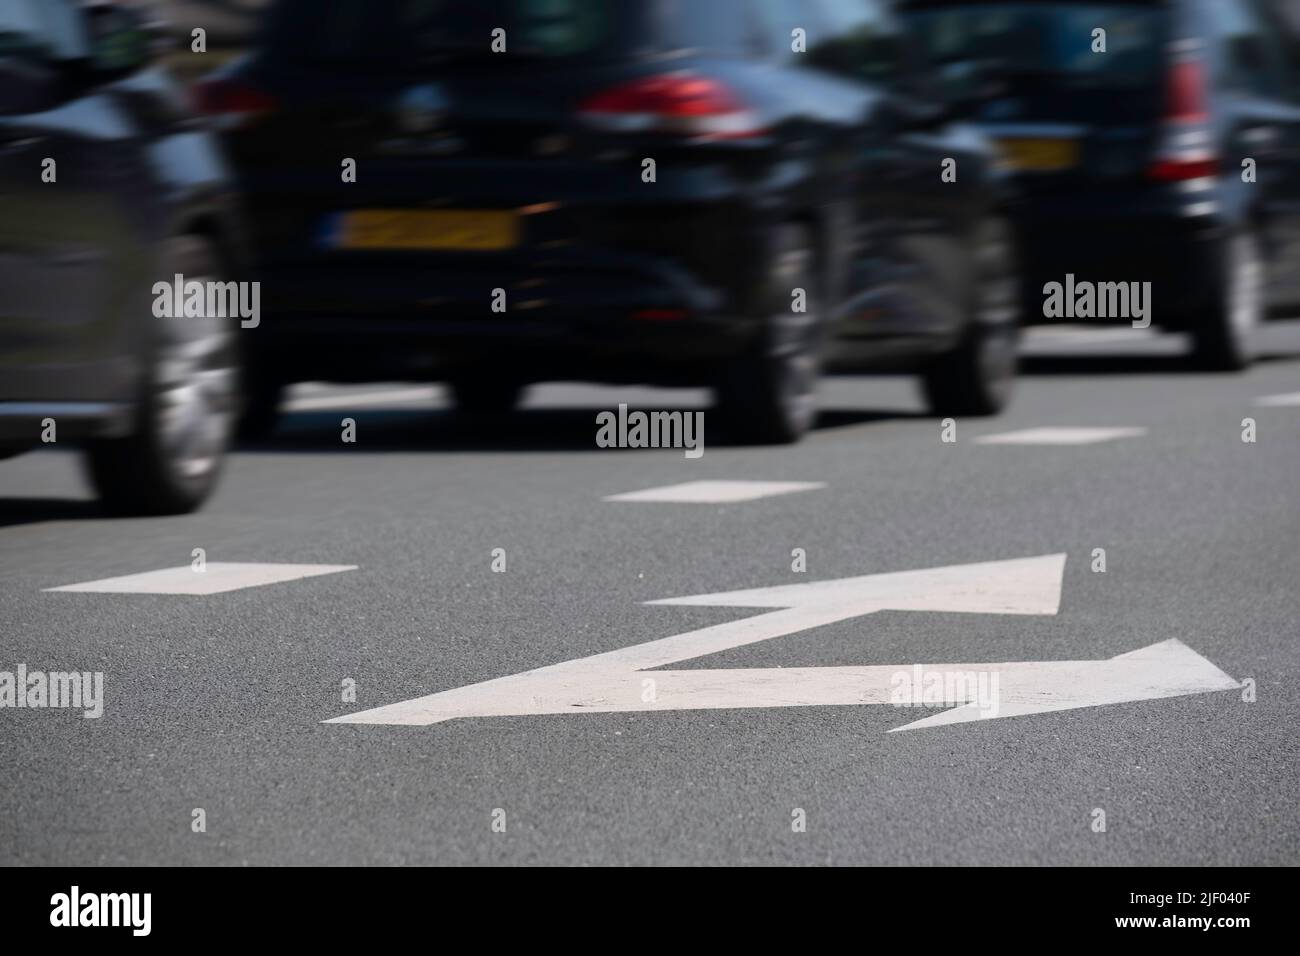 Dunkle Autos fahren nacheinander auf einer asphaltierten Straße auf einer Spur. Die rechte Spur mit den Pfeilen geradeaus und rechts ist leer. Konzentrieren Sie sich auf die Stockfoto